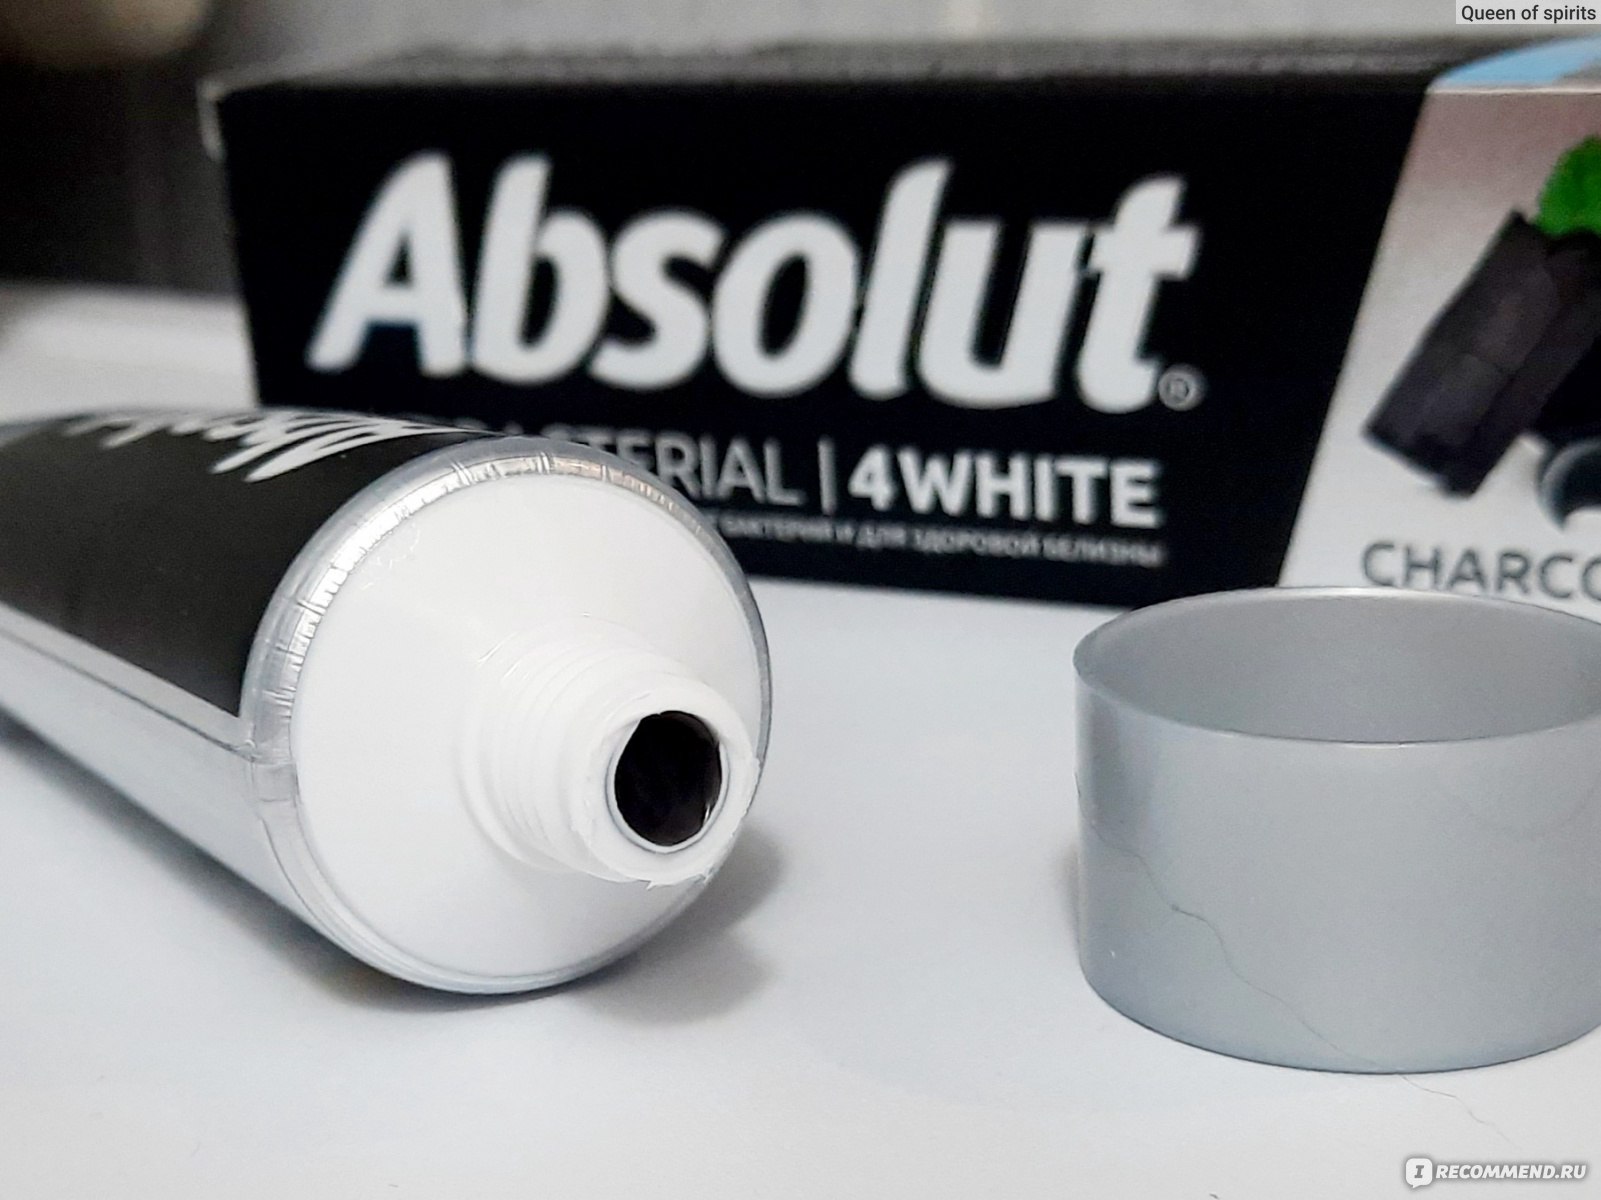 Зубная паста Absolut Antibacterial 4WHITE, отзывы 